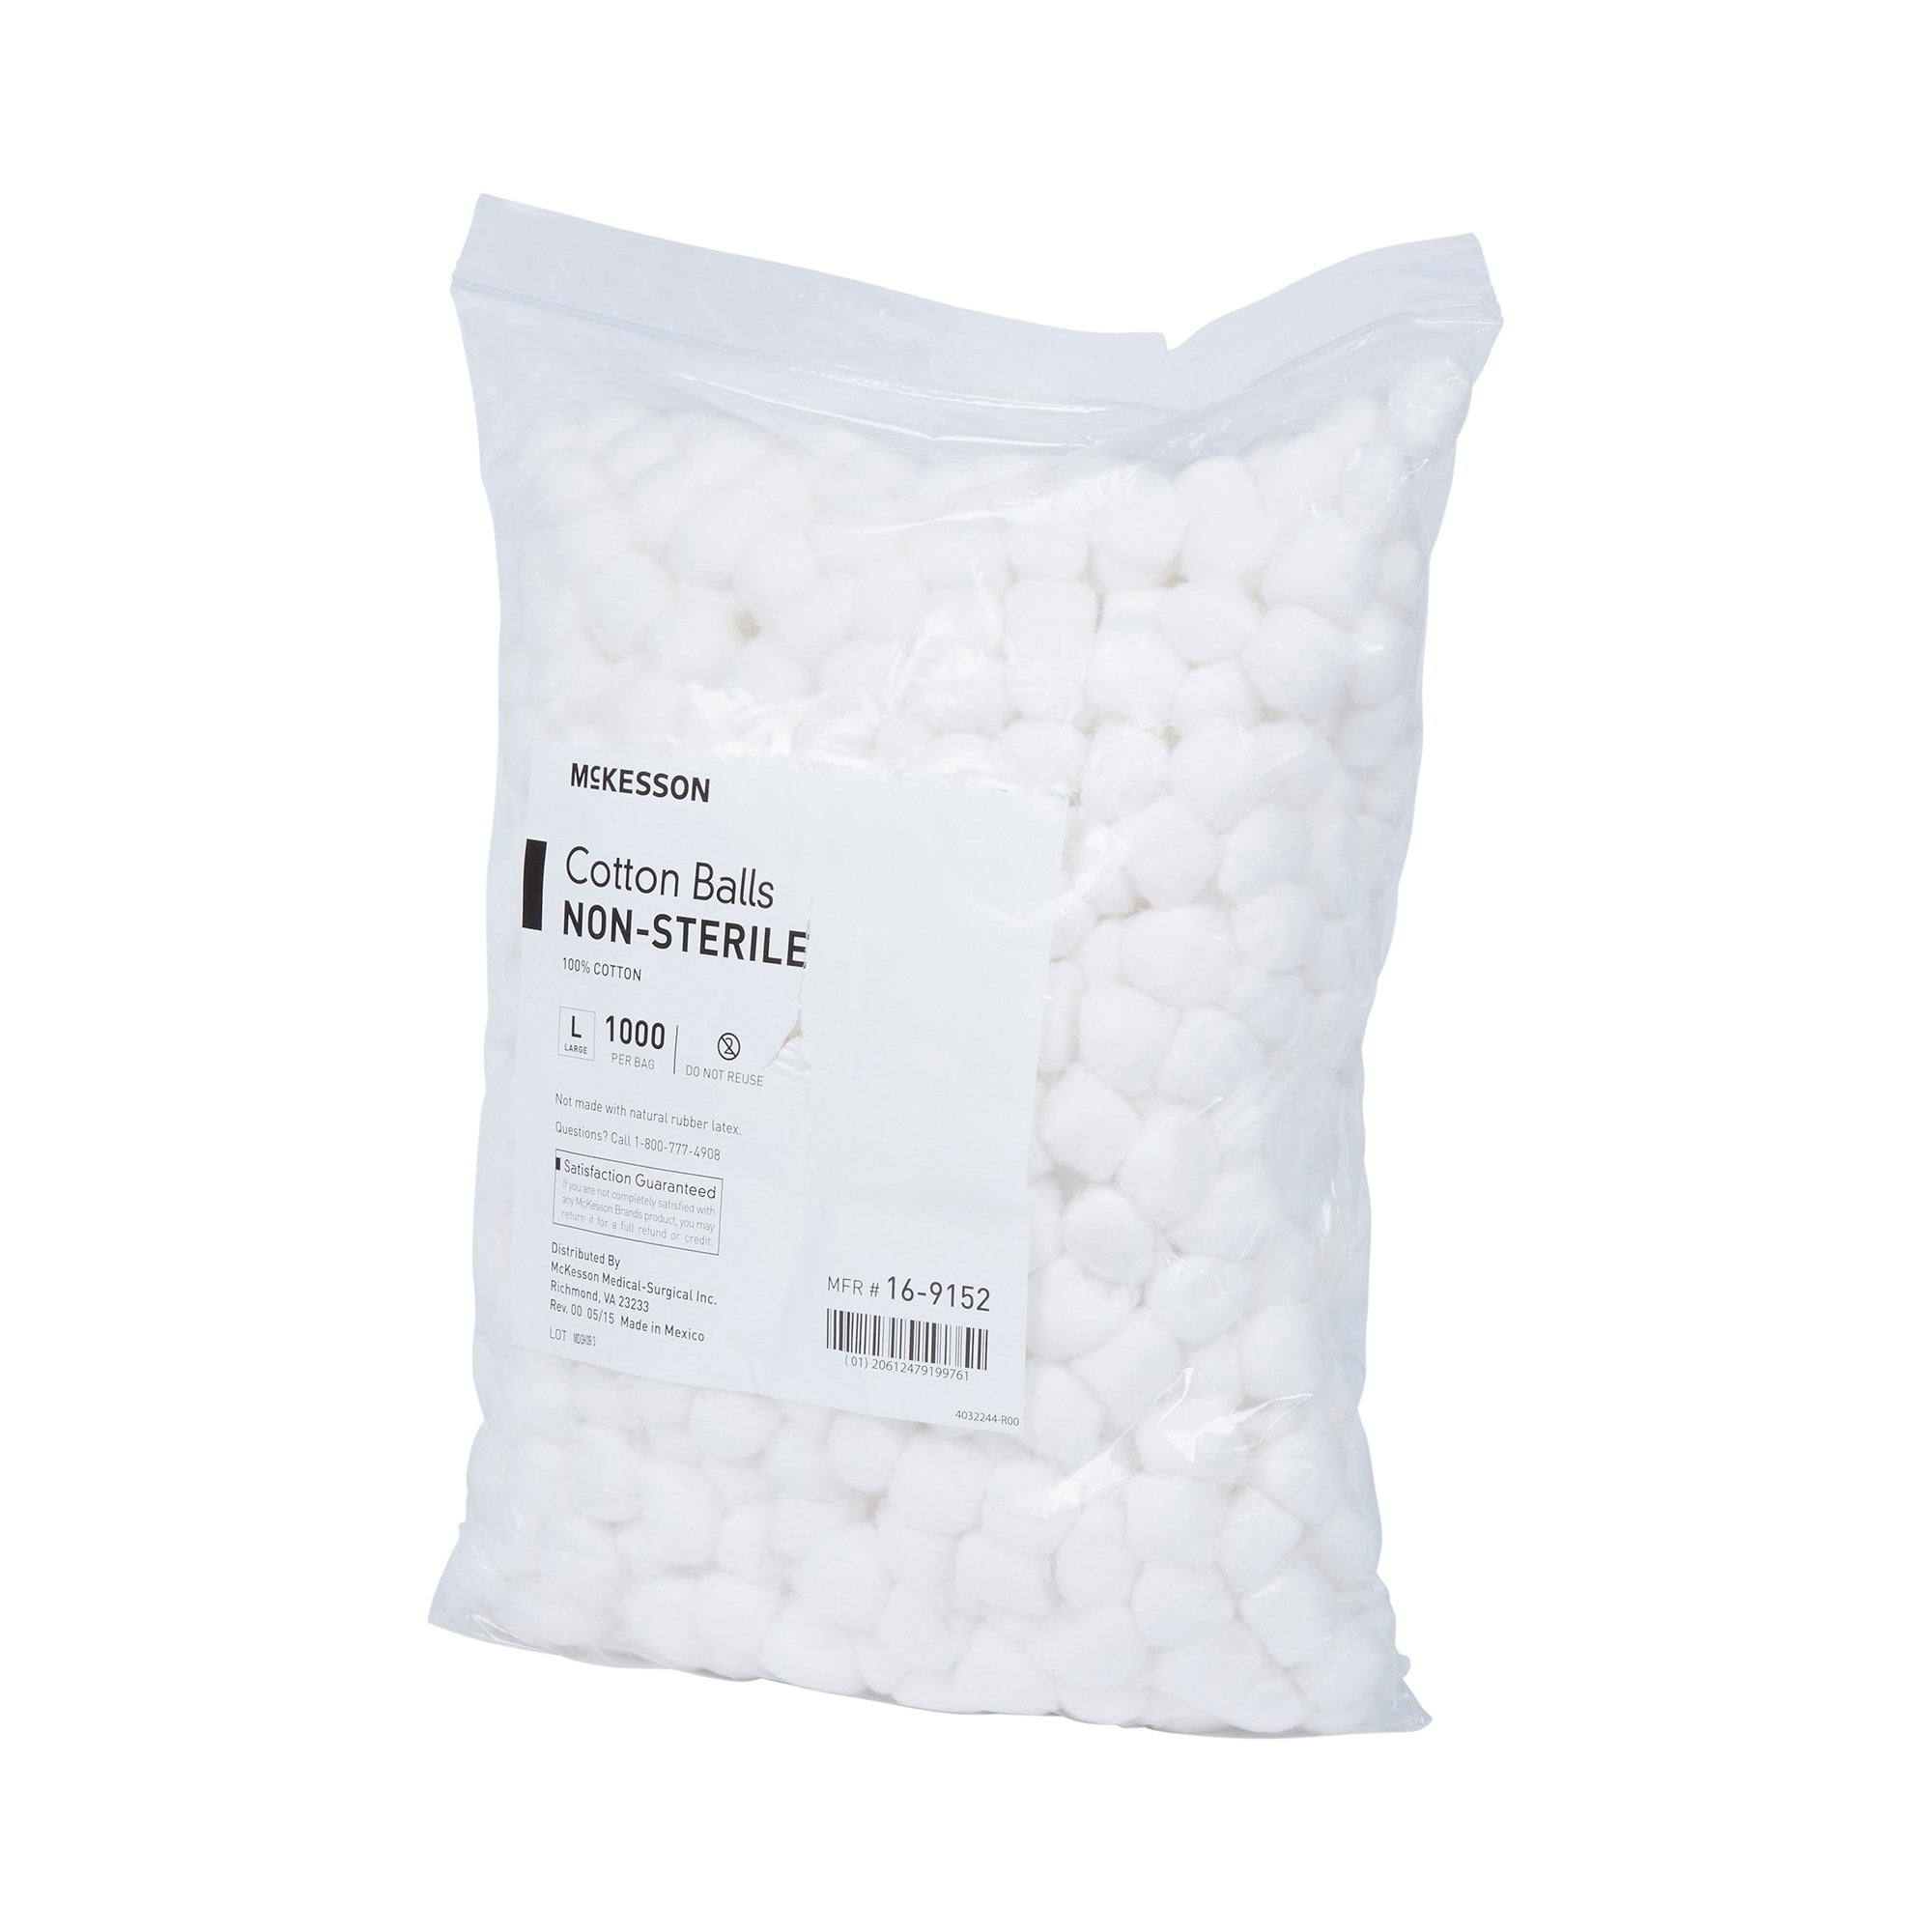 Medline MDS21463 Cotton Balls Large - Pack of 50